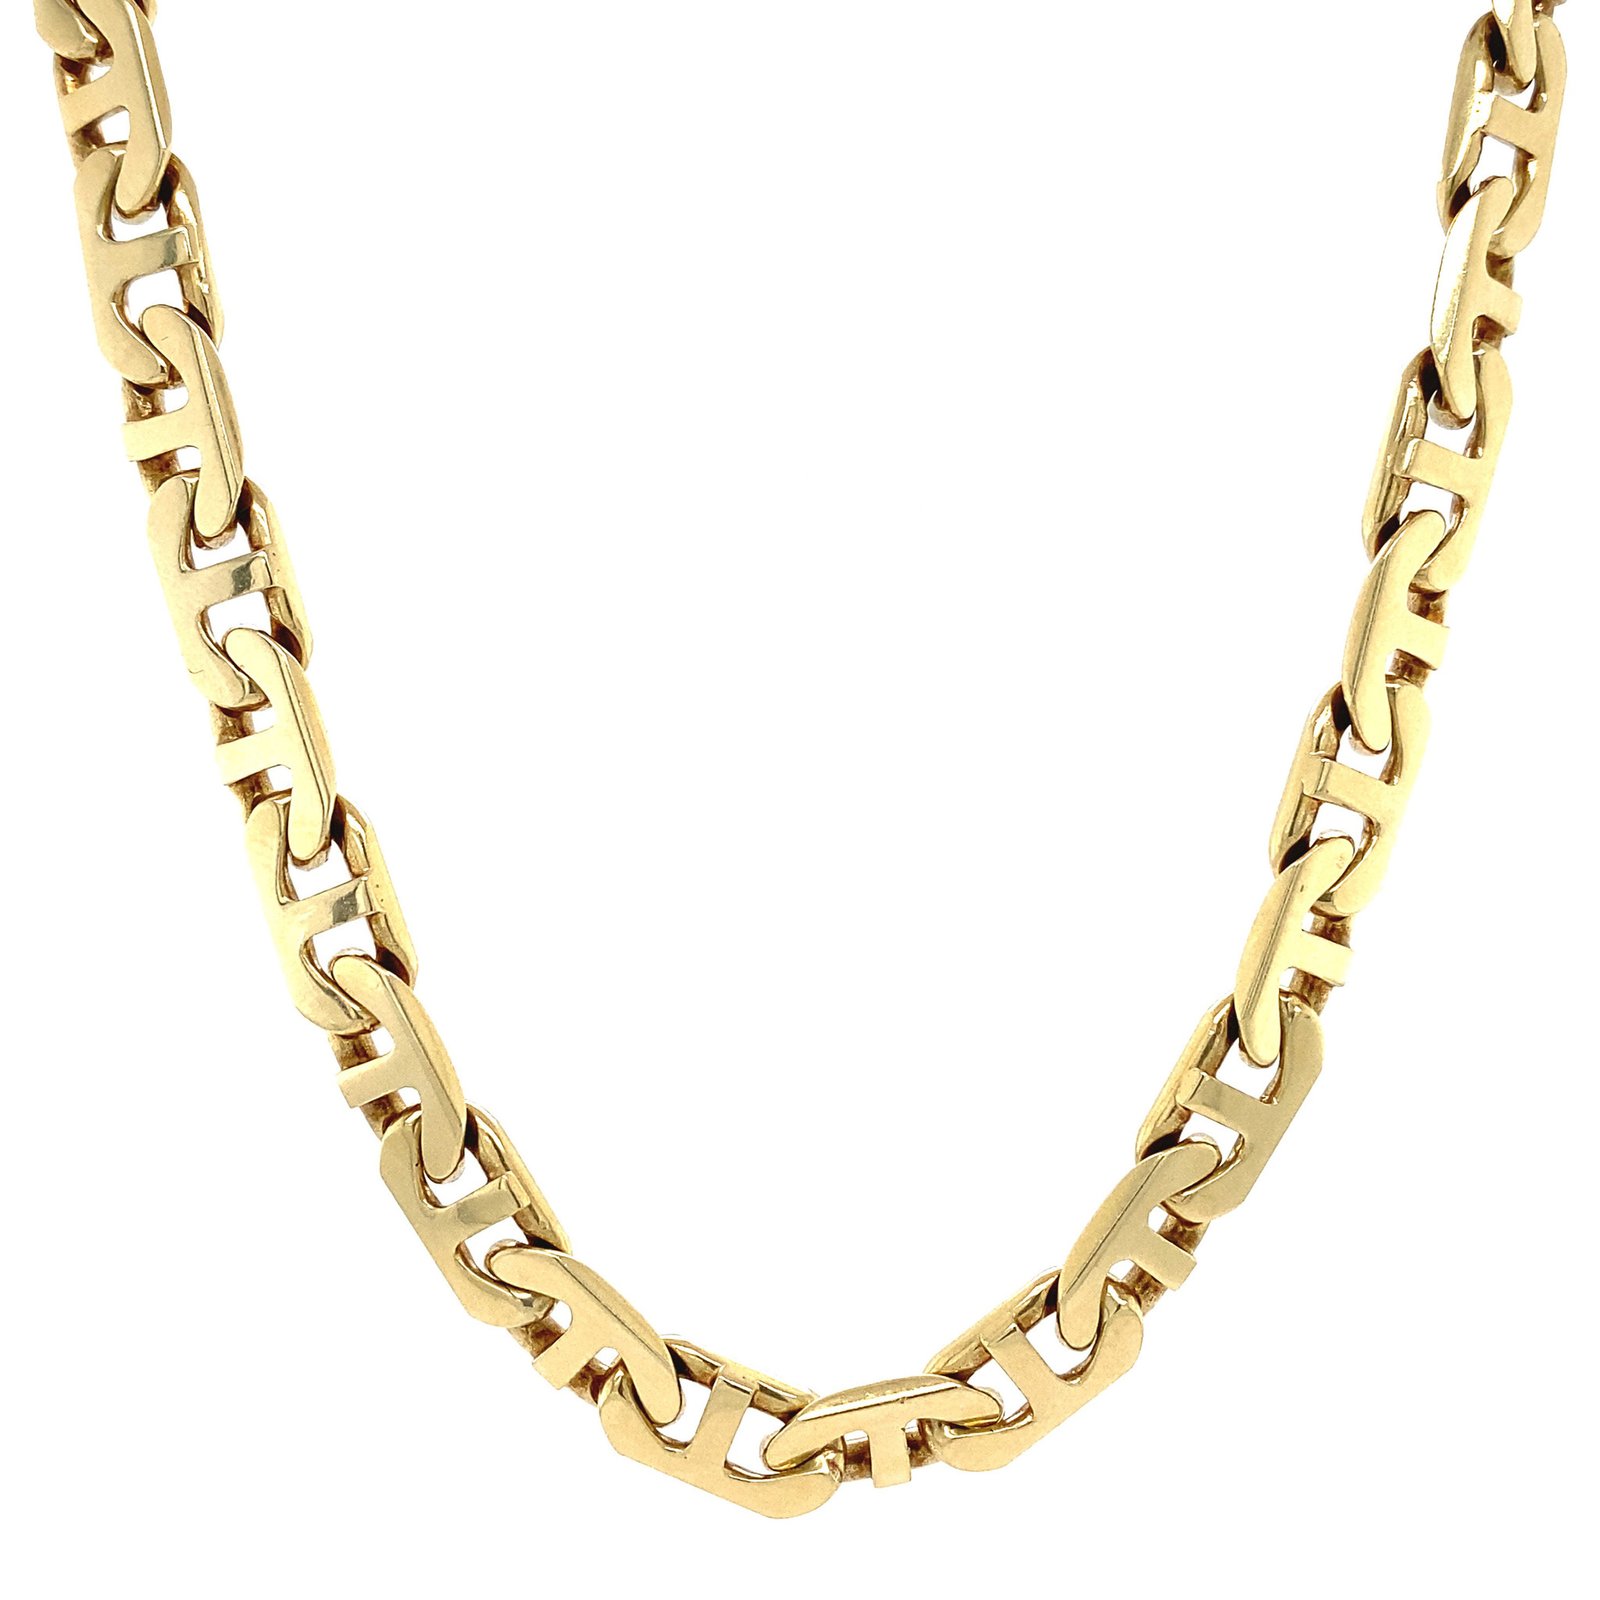 Gold Chain Design 5